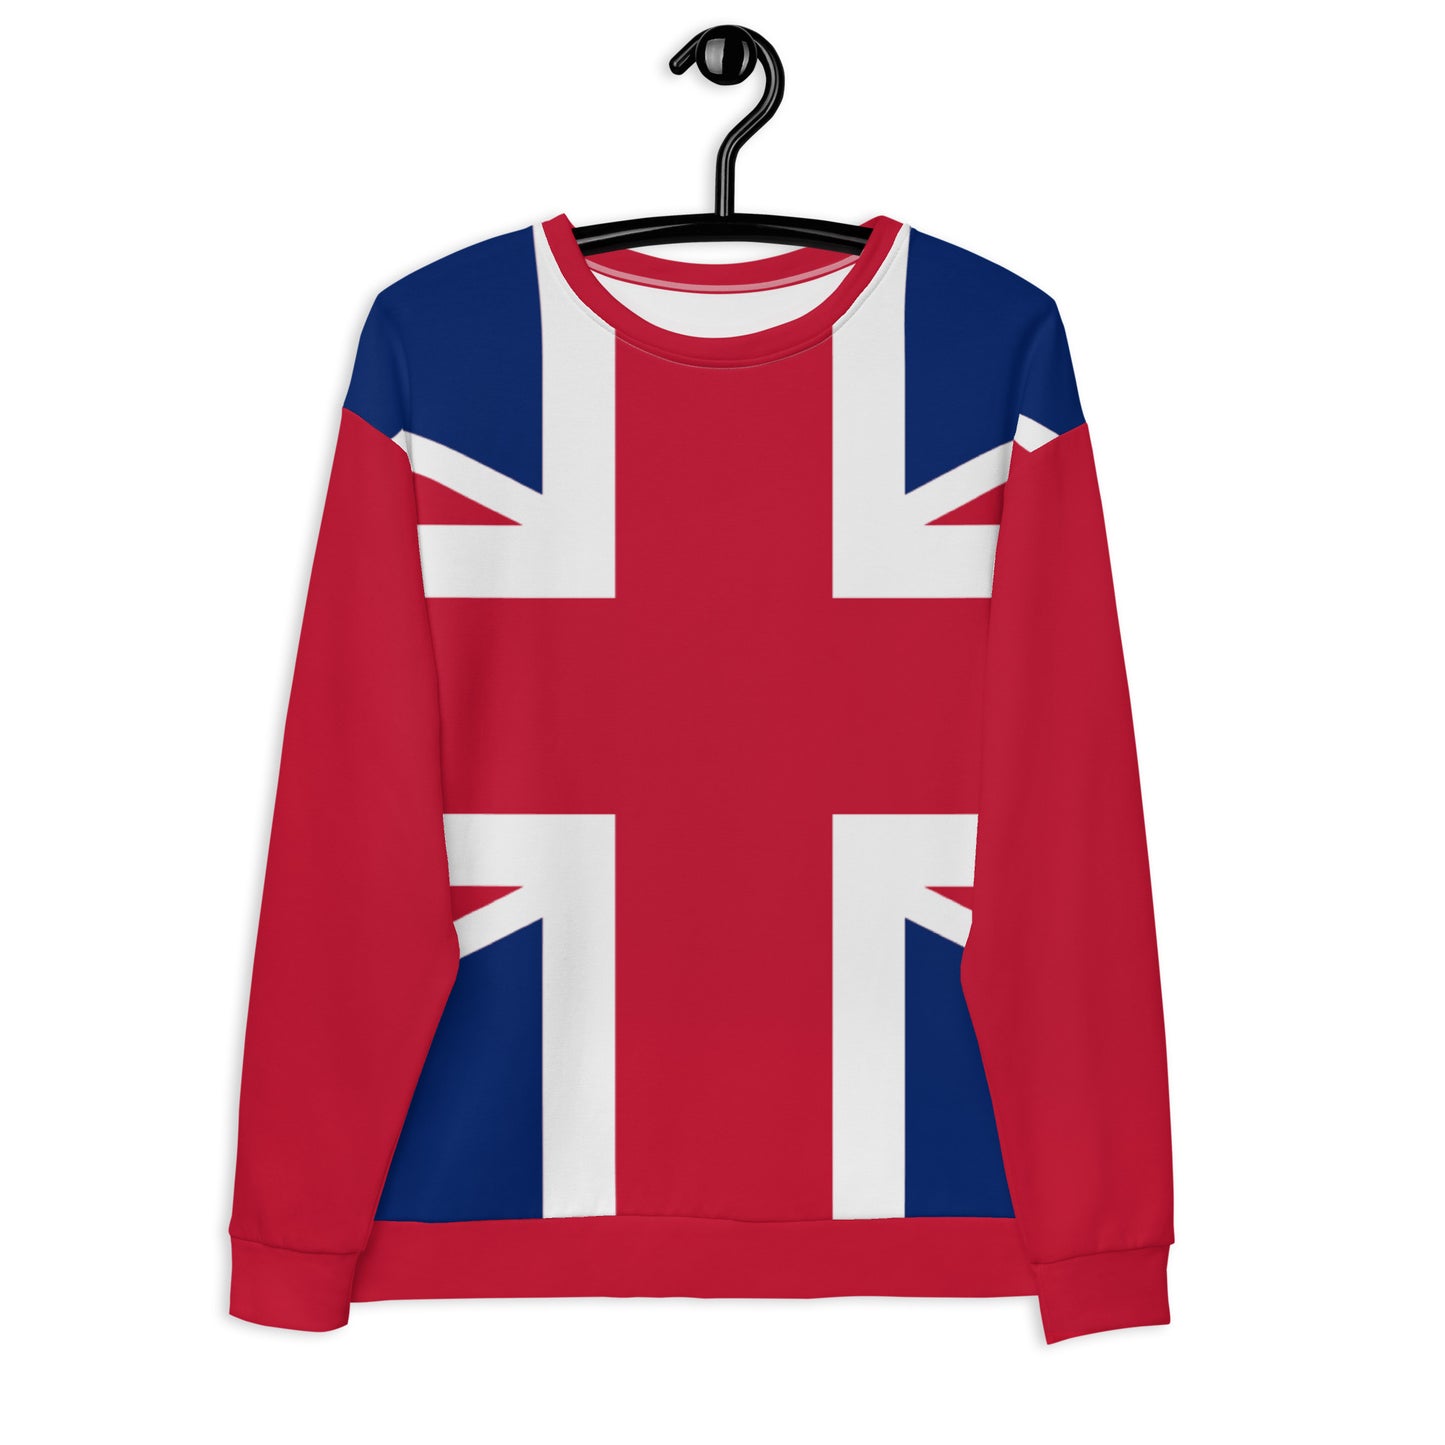 Union Jack Sweater / British Union Jack / Crewneck Sweatshirt